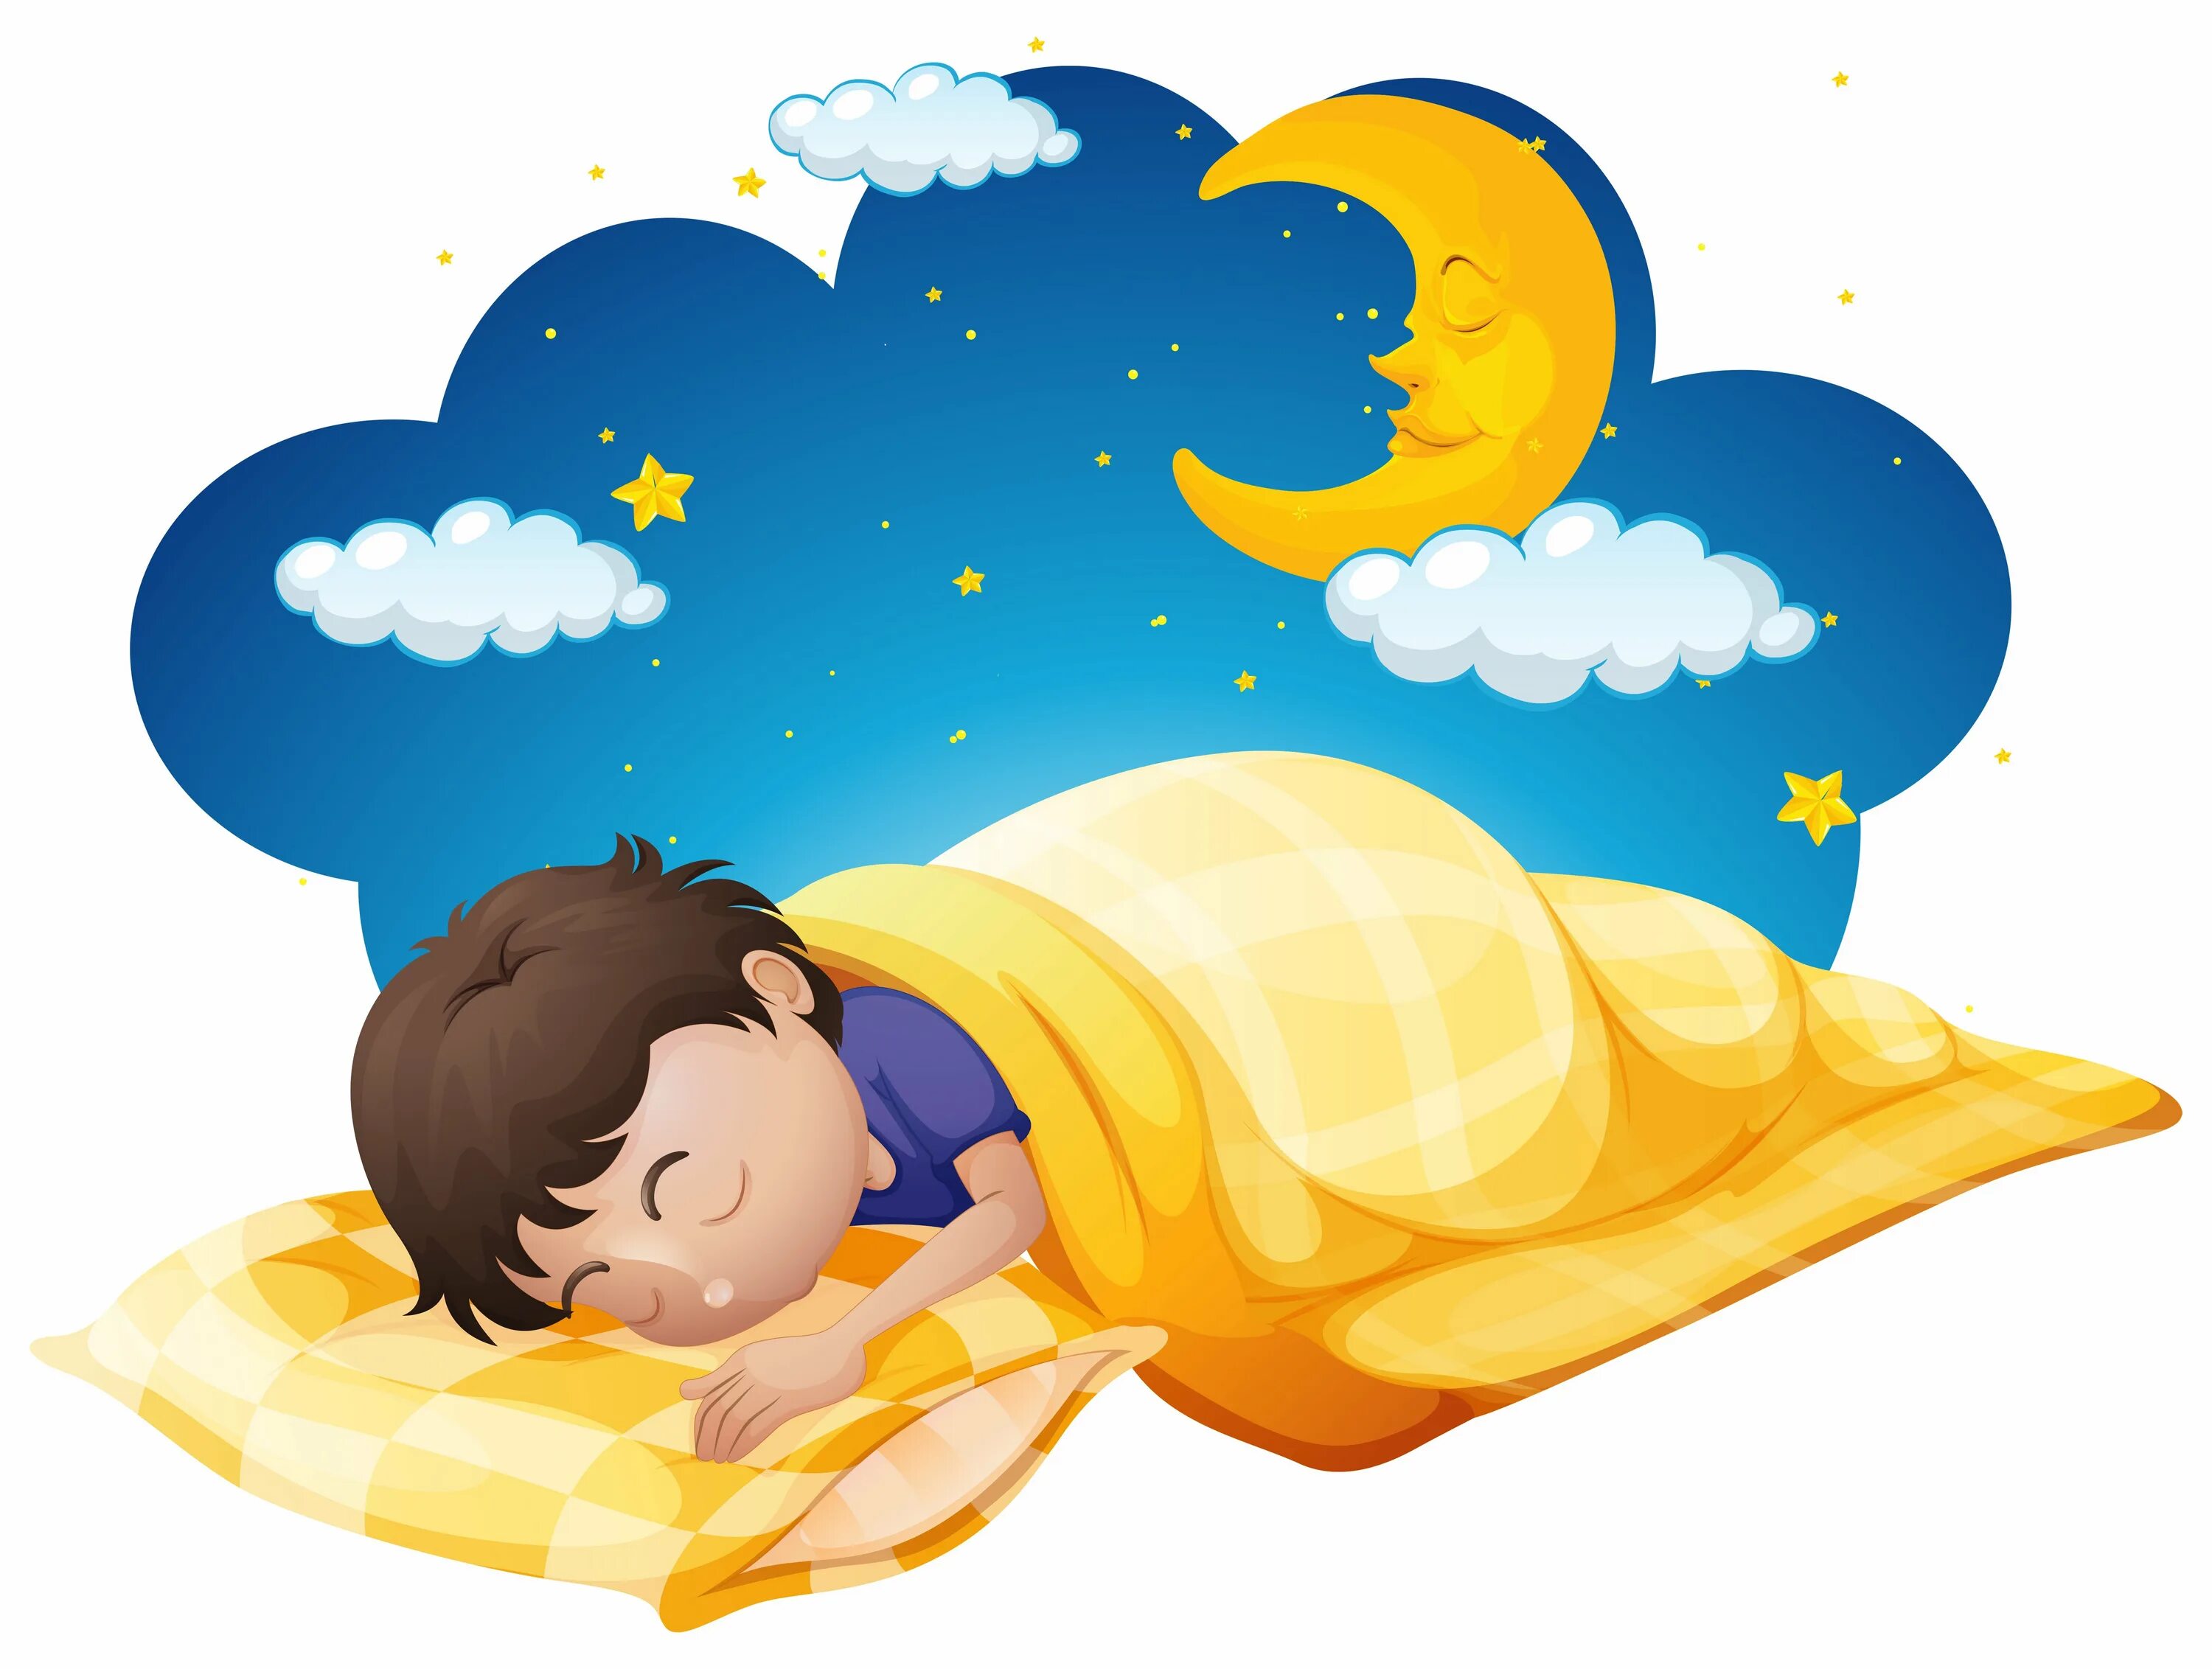 Спящий мальчик. Сон картинки для детей. Иллюстрации сна детей. Какой звук привлек разведчиков нашедших спящего мальчика